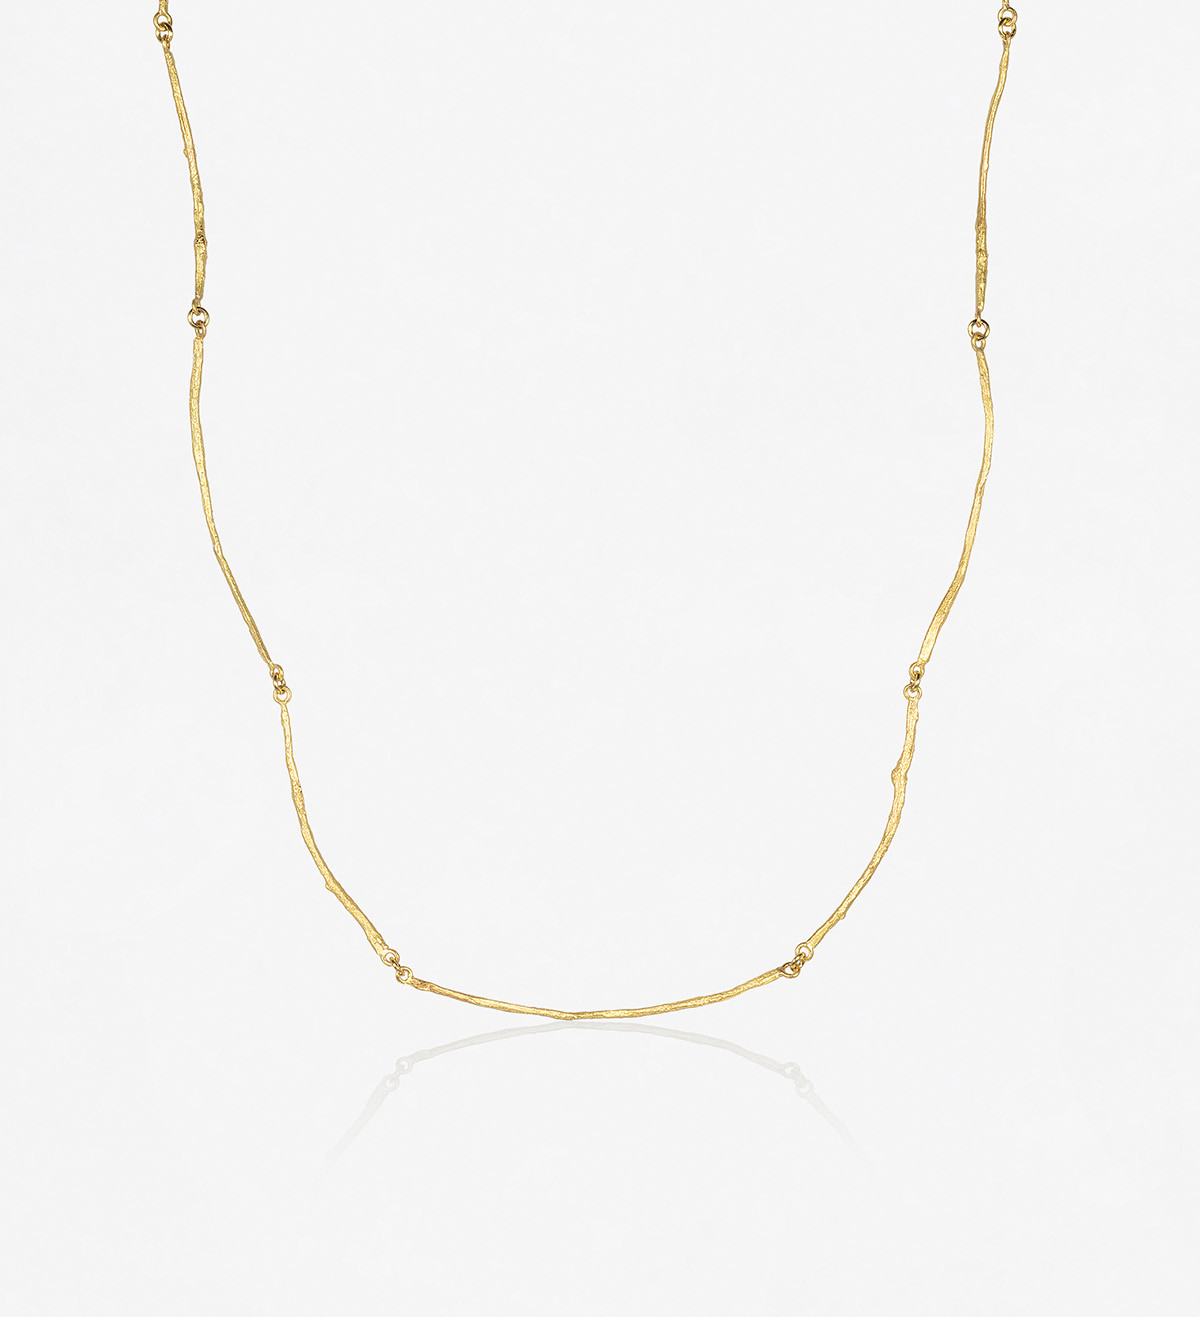 18k gold necklace Romaní 45cm